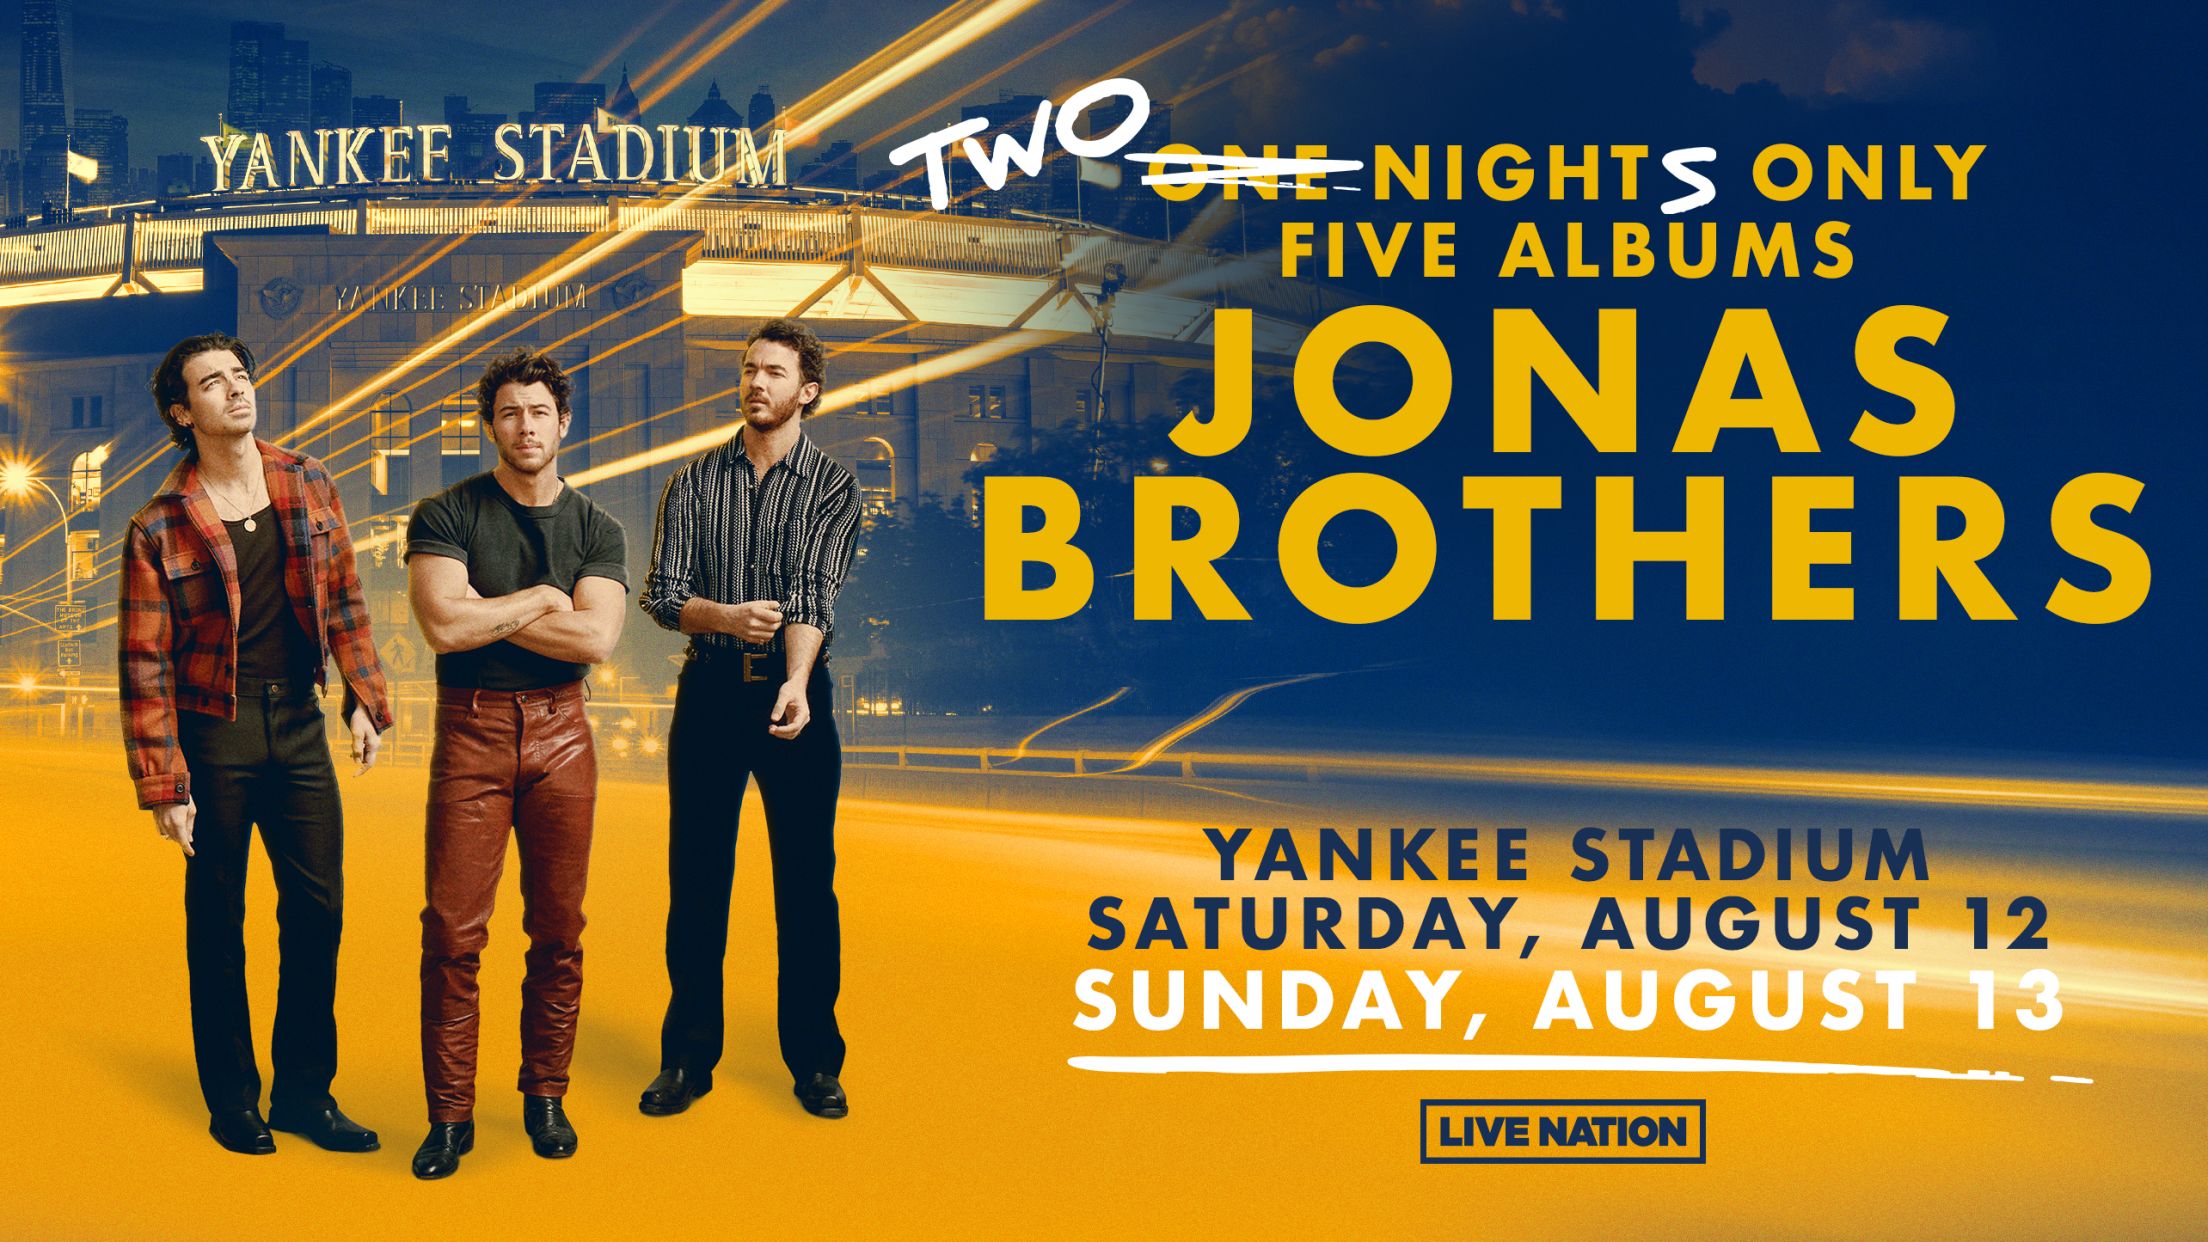 Jonas Brothers at Yankee Stadium New York Yankees